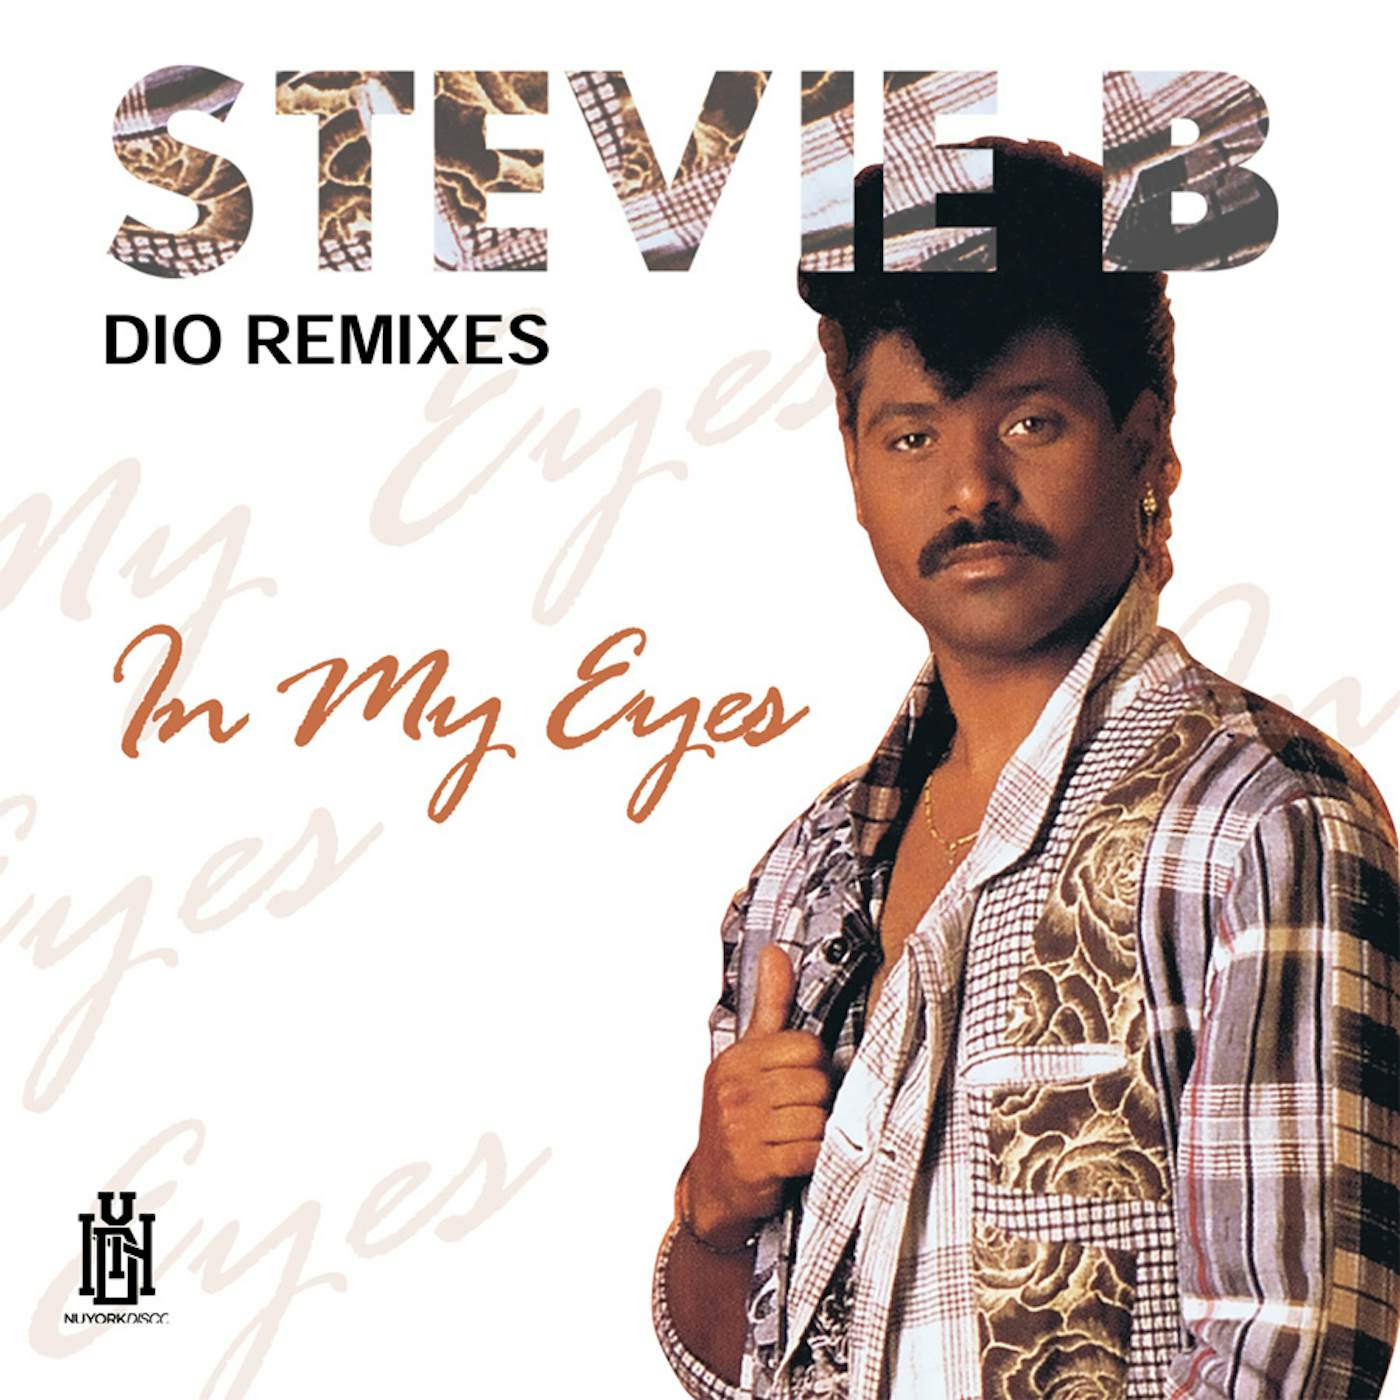 Stevie B IN MY EYES (DIO REMIXES) CD